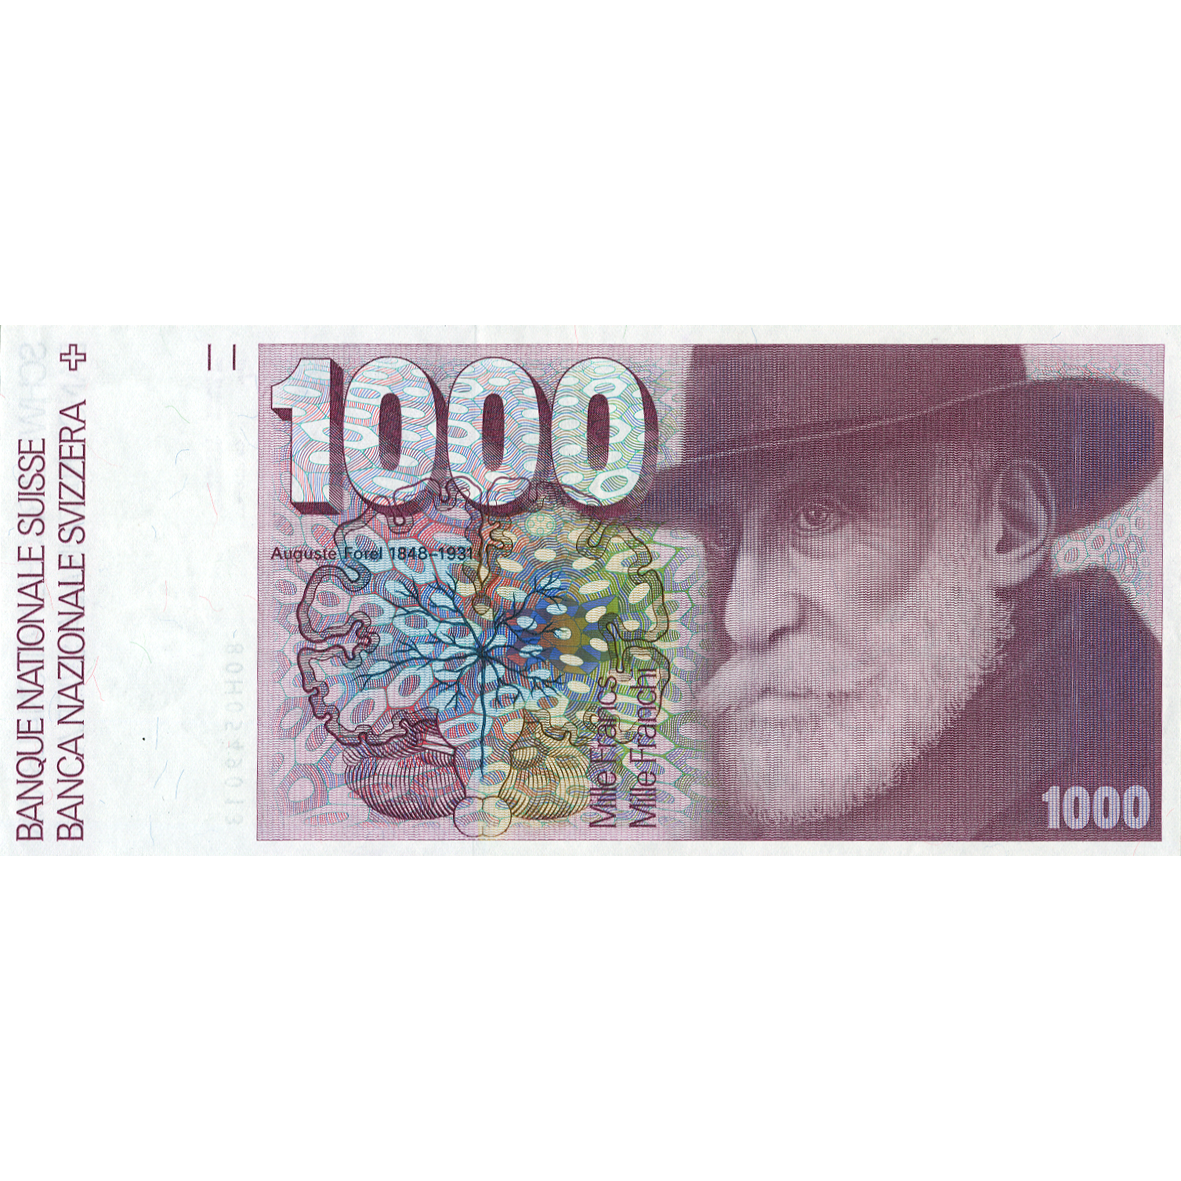 Schweizerische Eidgenossenschaft, 1000 Franken 1980, 6. Banknotenserie, in Kurs 1976-2000 (obverse)